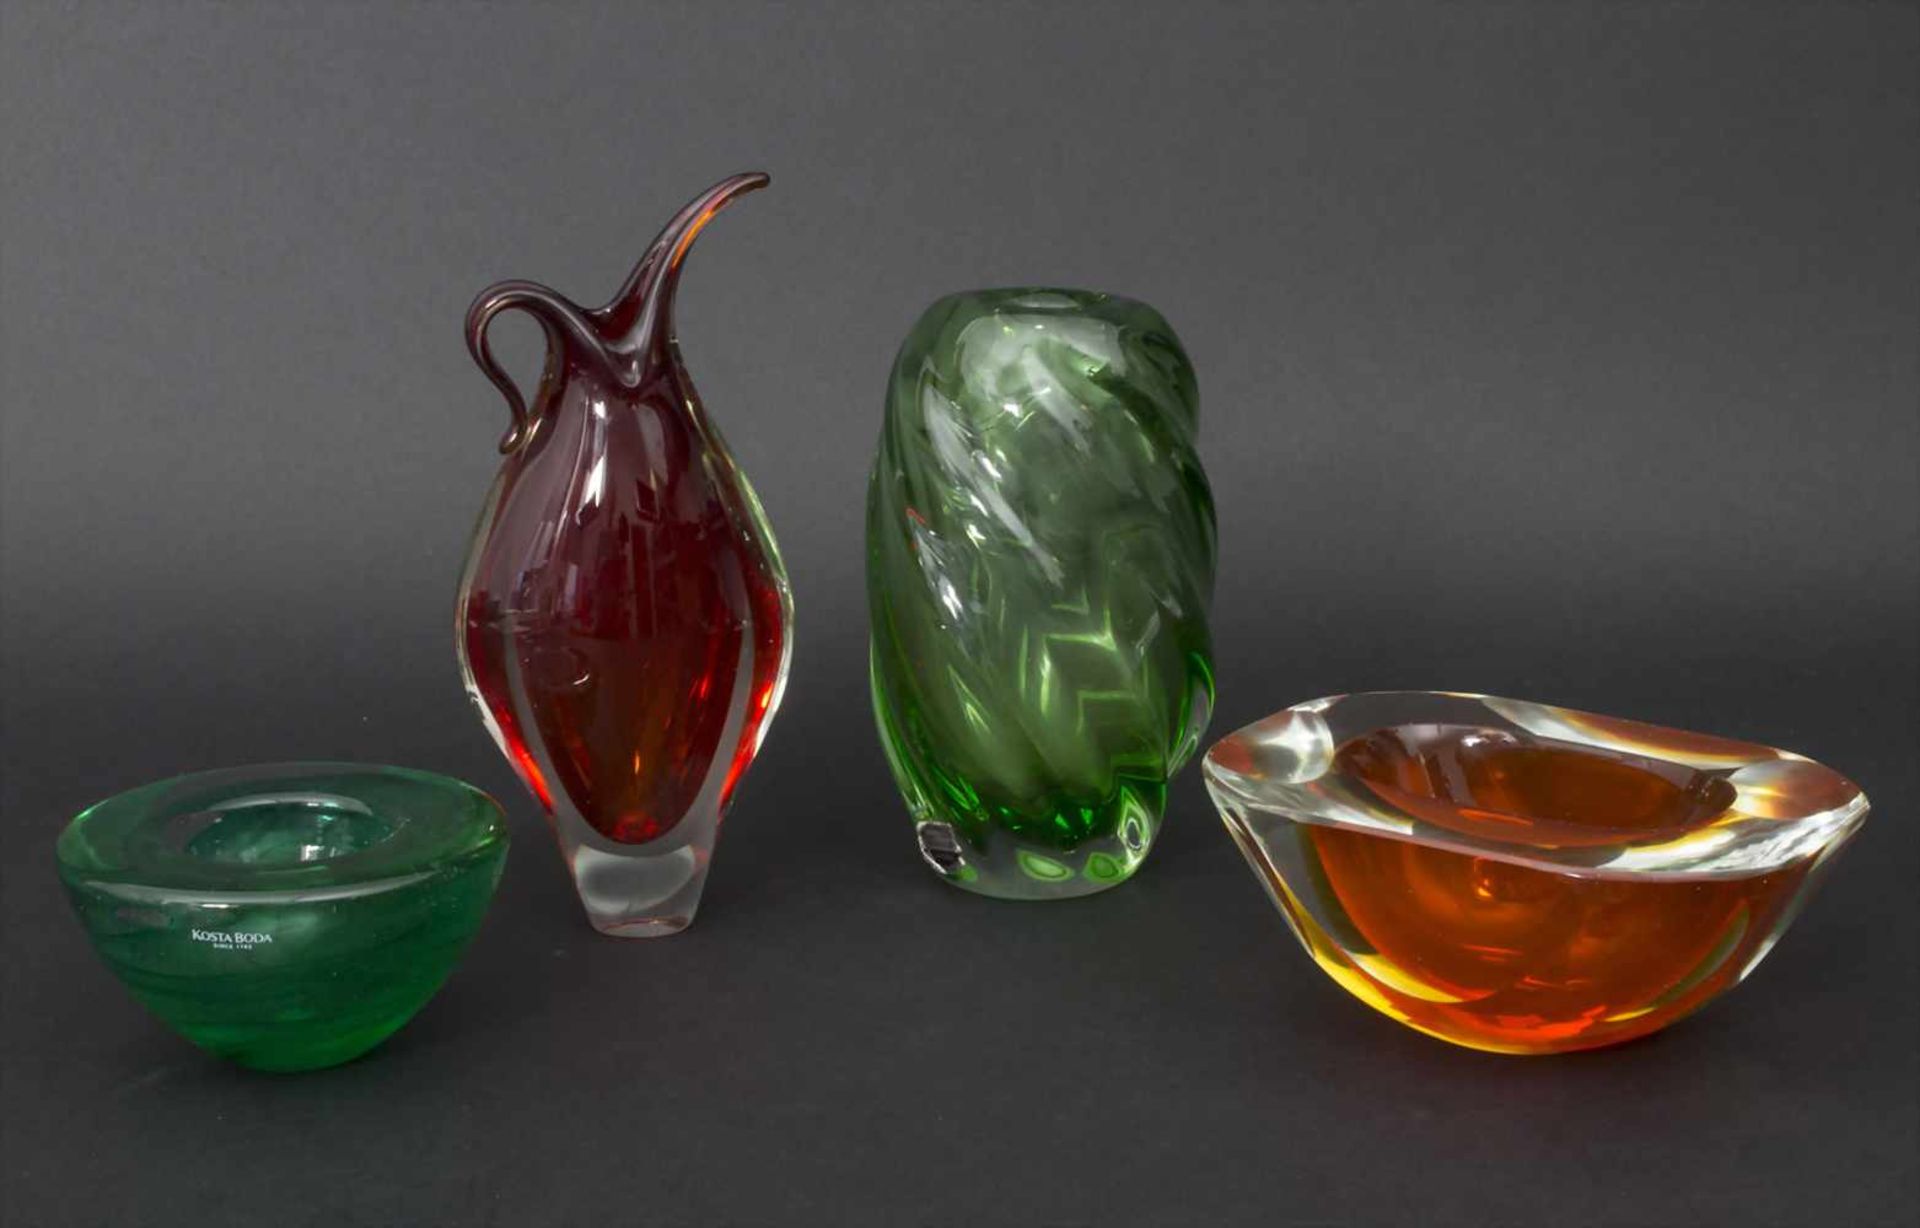 Konvolut 4 Glasgefäße / A set of 4 glass vessels, Murano/Kosta Boda/Hospodka, 1950/60er